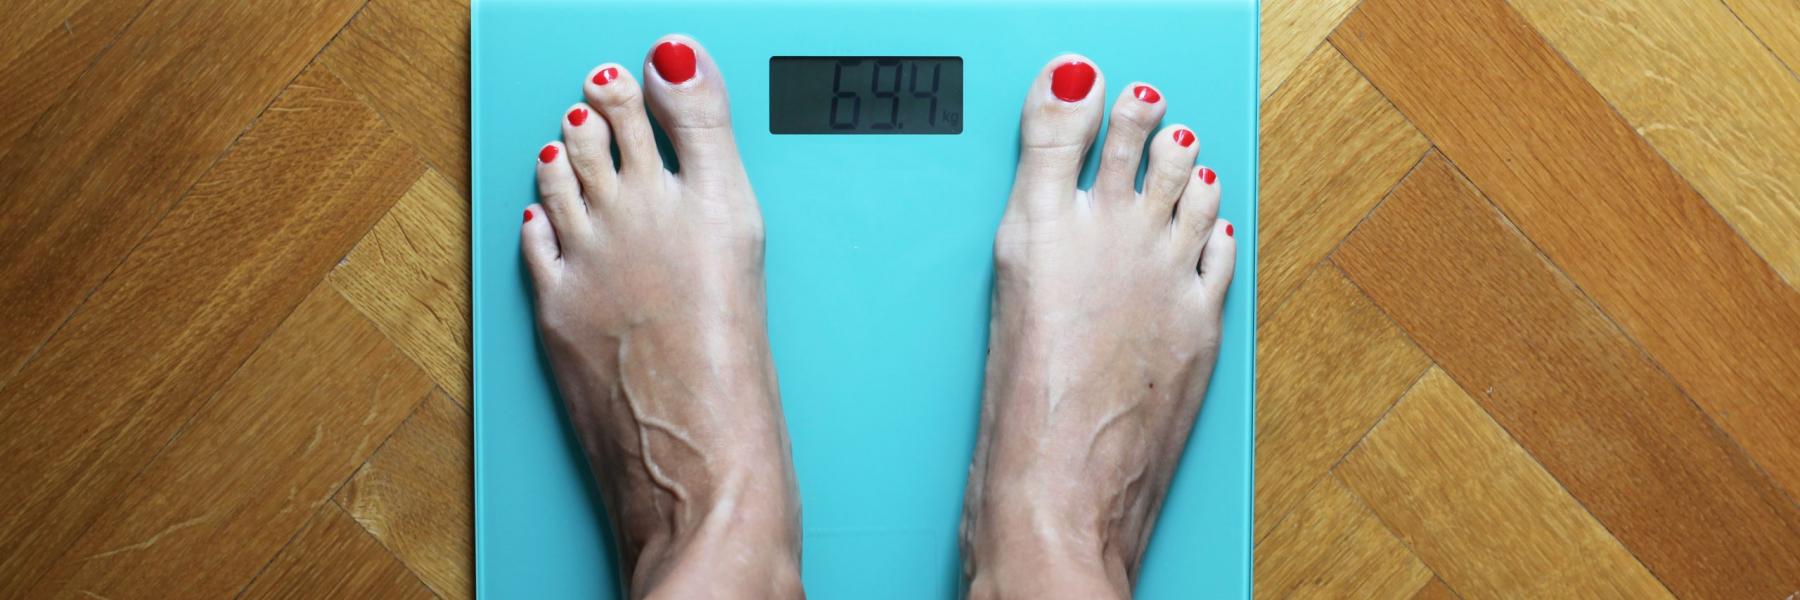 دراسة جديدة: عادة شائعة قد تكون السبب وراء زيادة الوزن